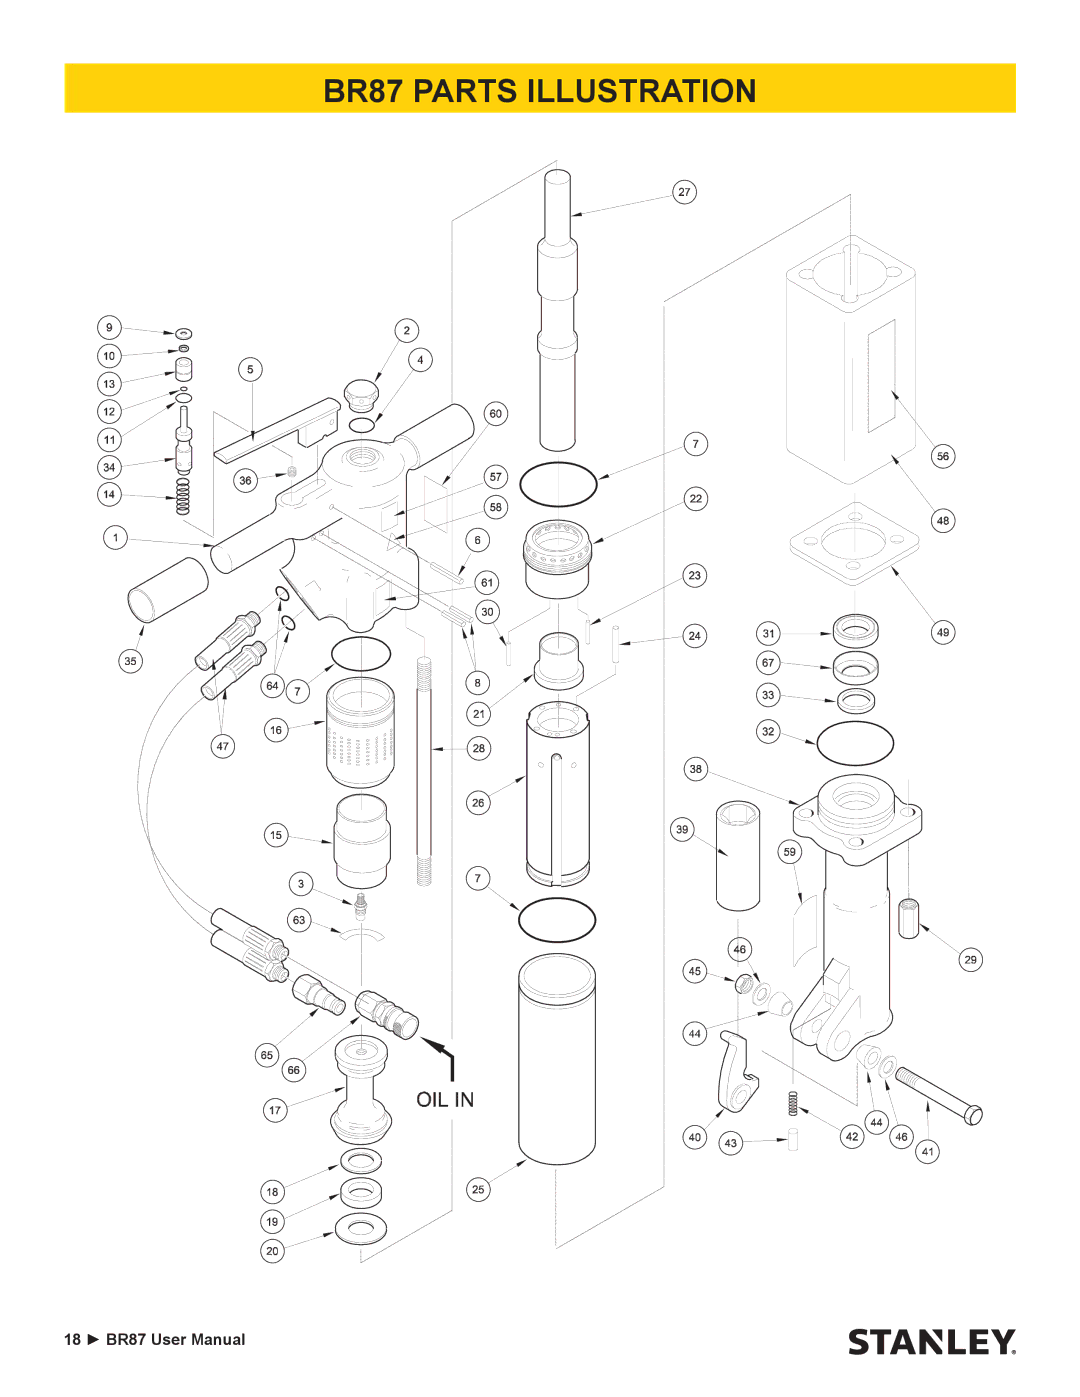 Stanley Black & Decker user manual BR87 Parts Illustration 